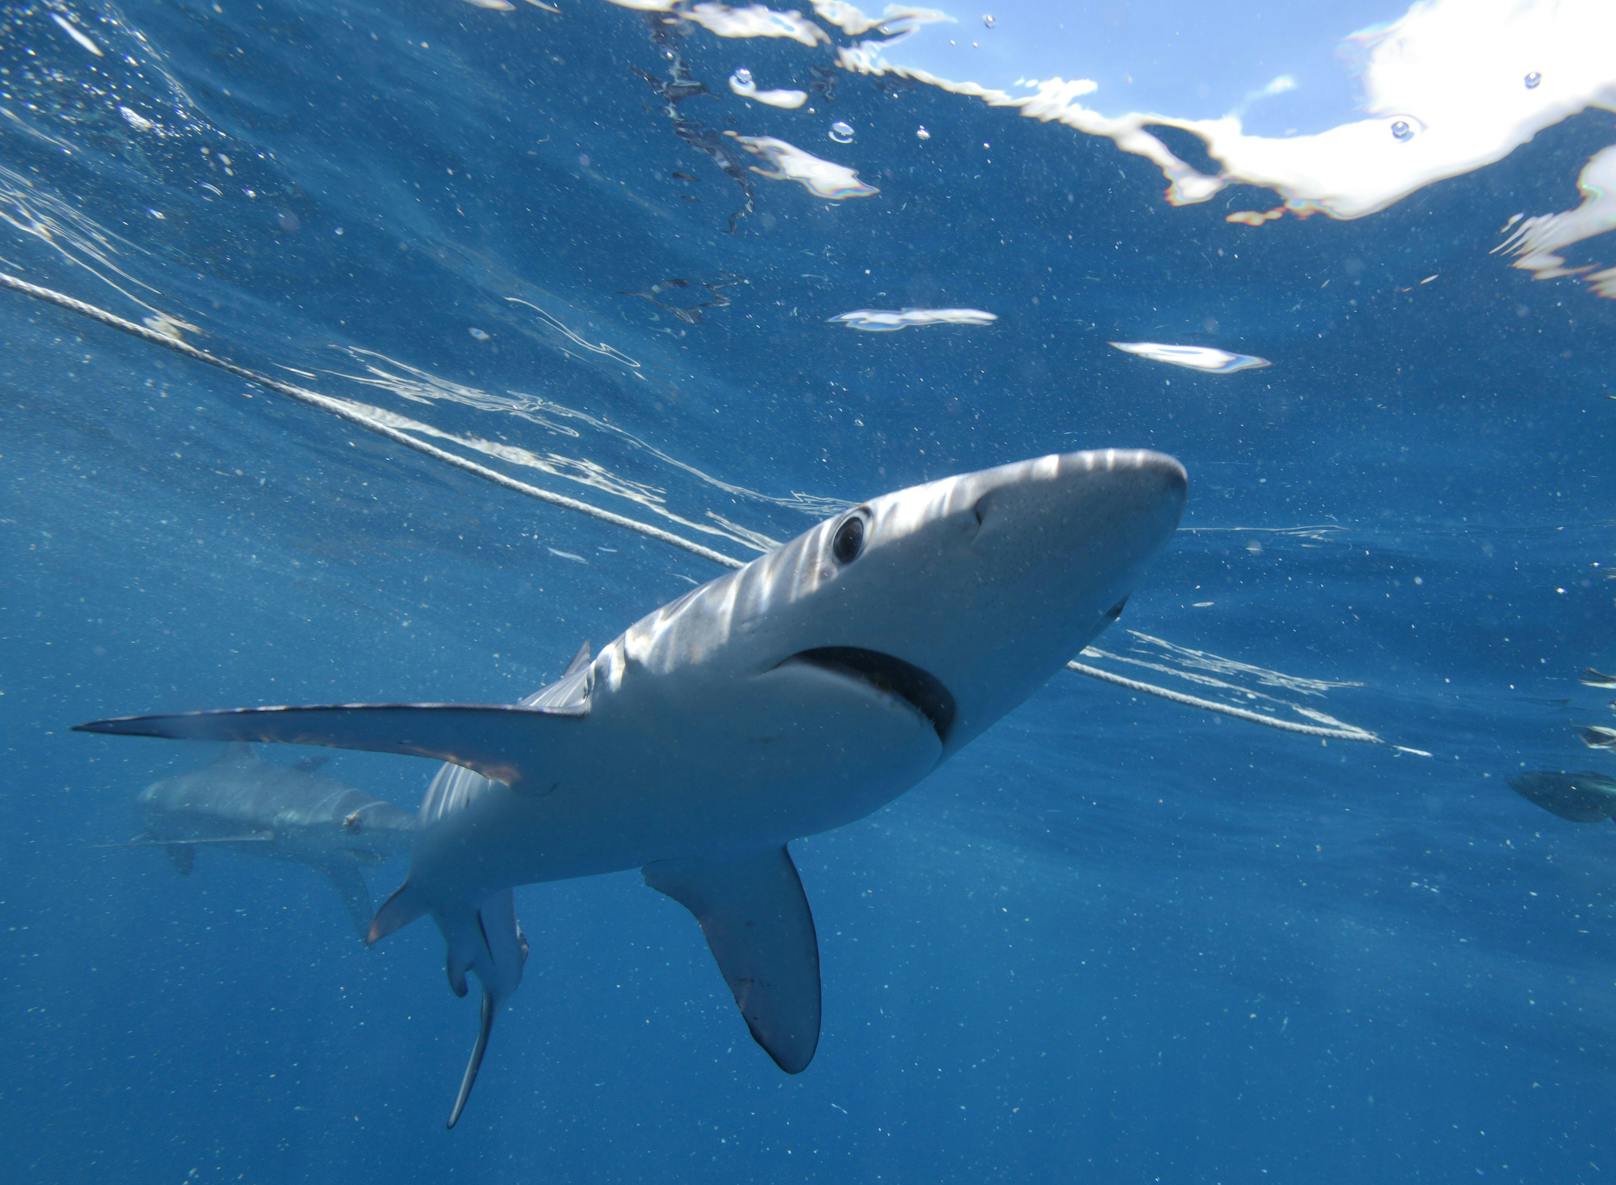 Blauhaie können weit über drei Meter groß werden und halten sich eigentlich in tieferen Gewässern auf. (Symbolbild)